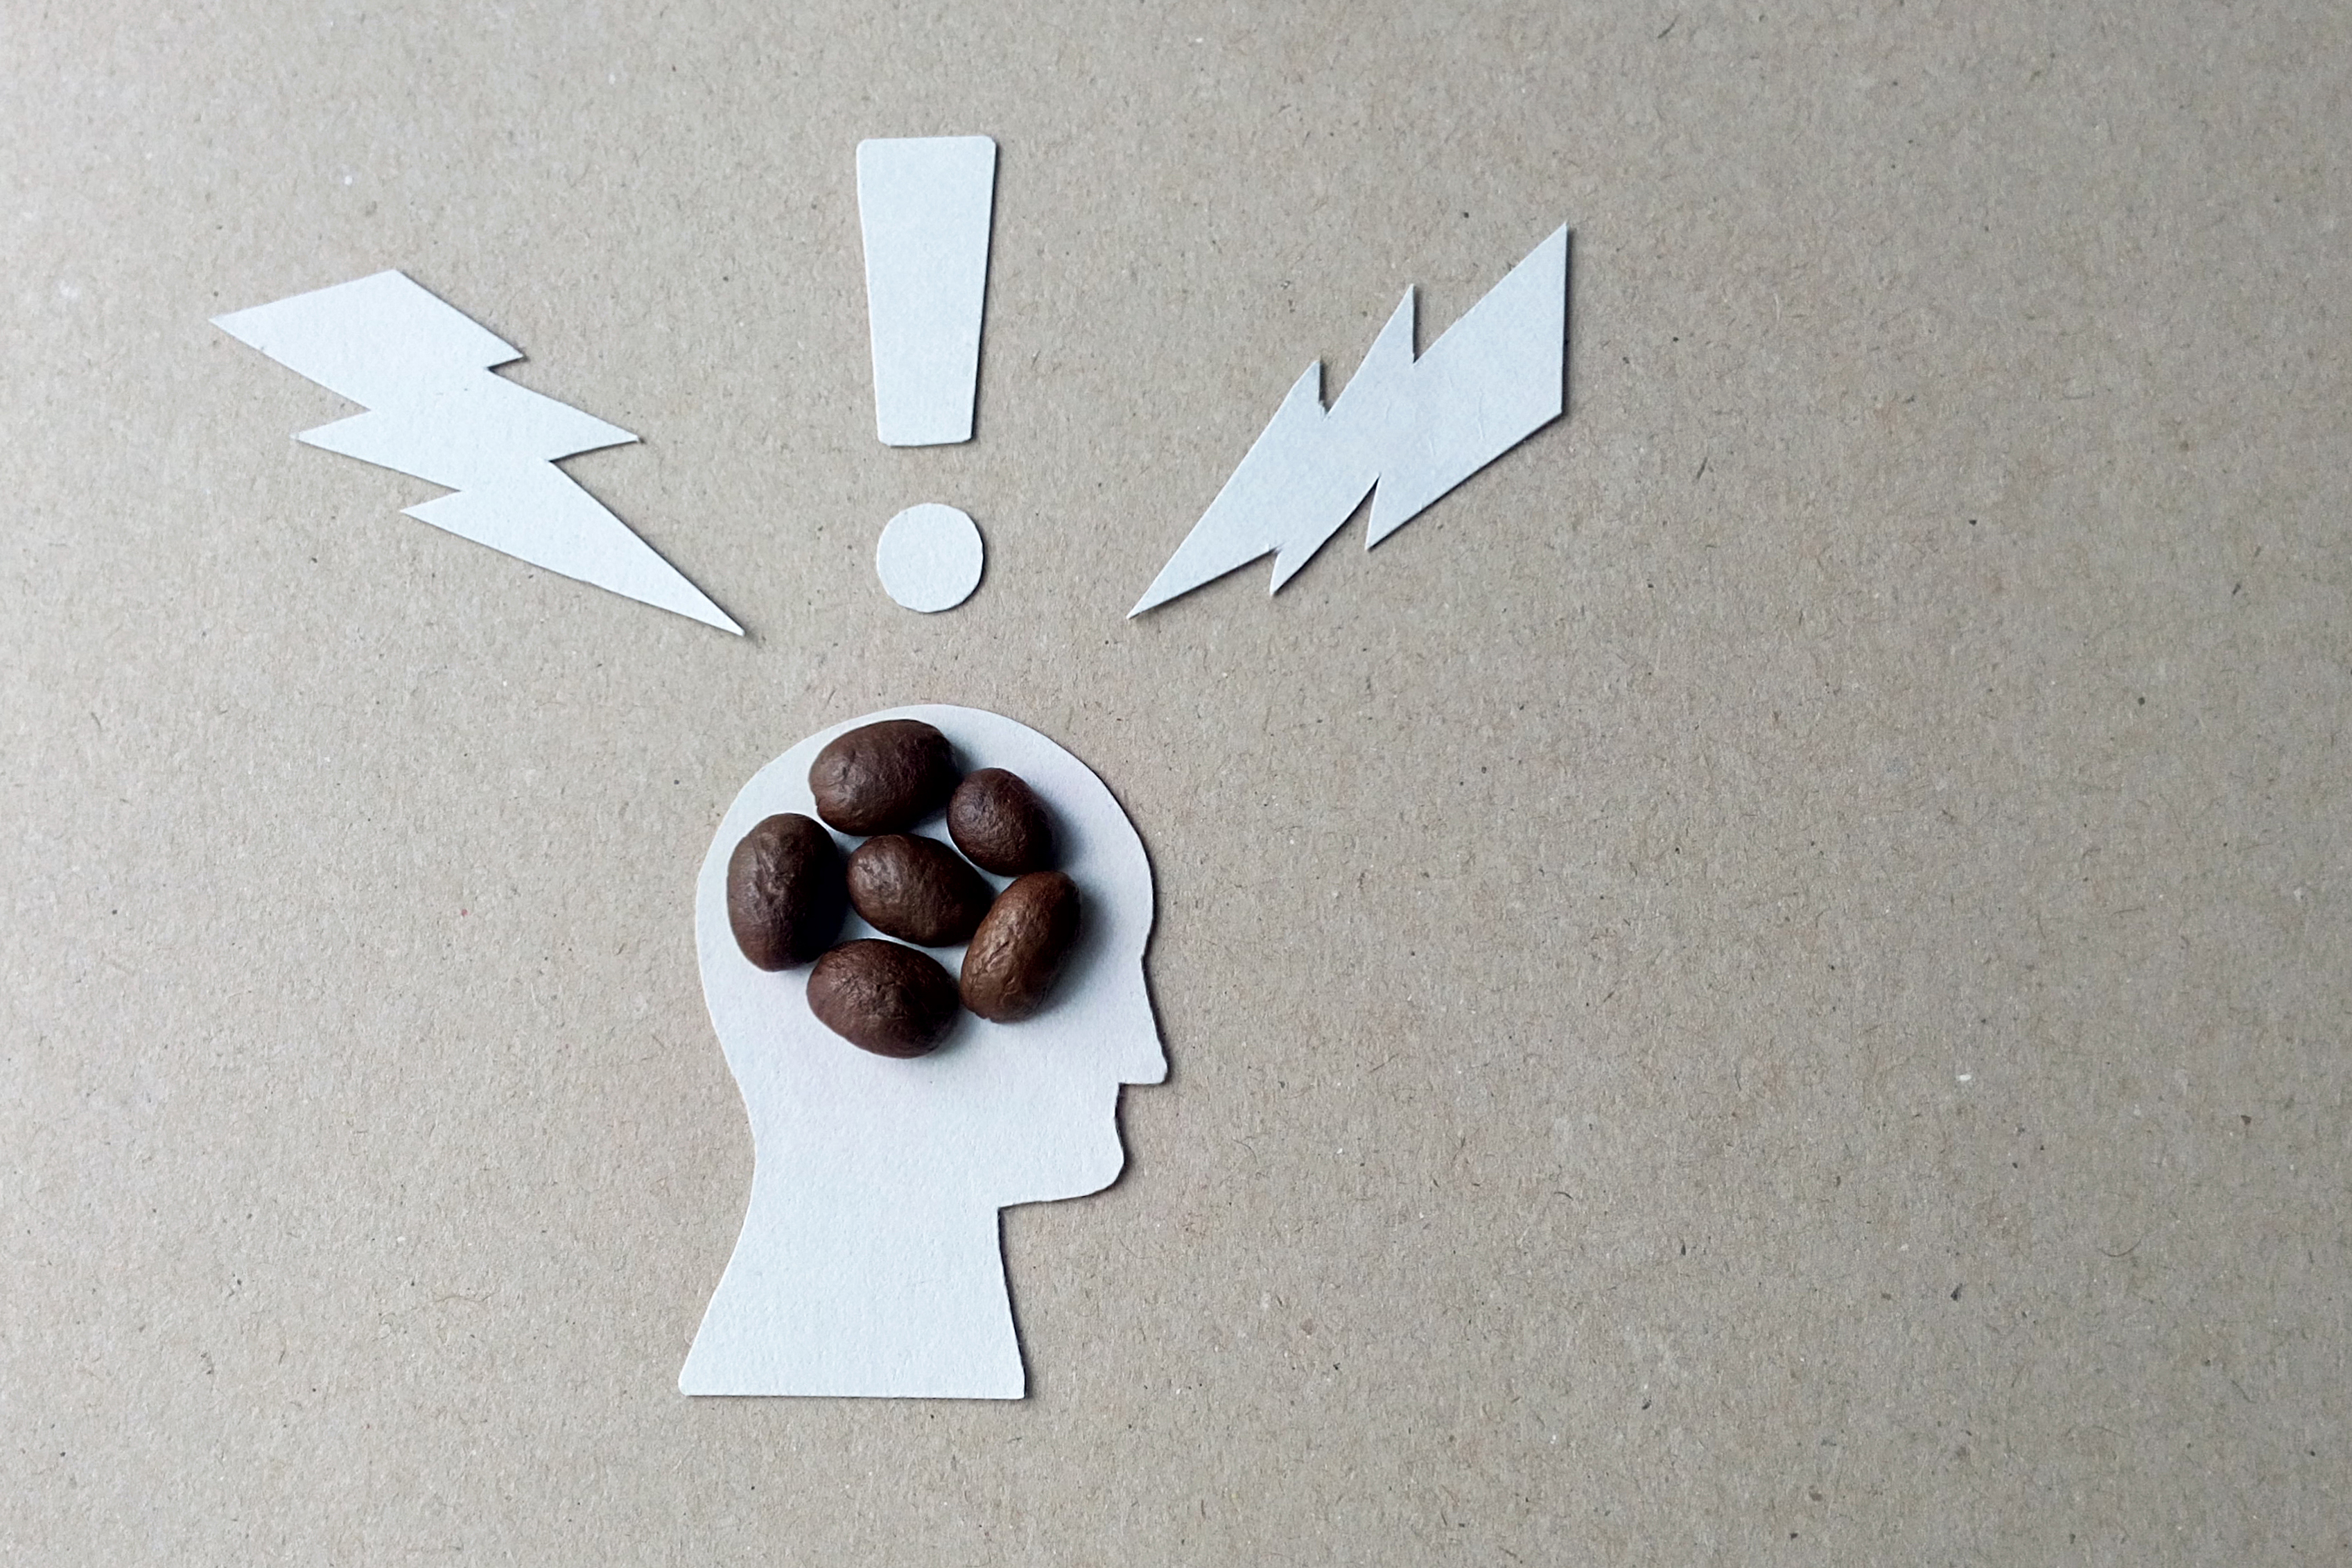 Koffein beeinflusst unser zentrales Nervensystem